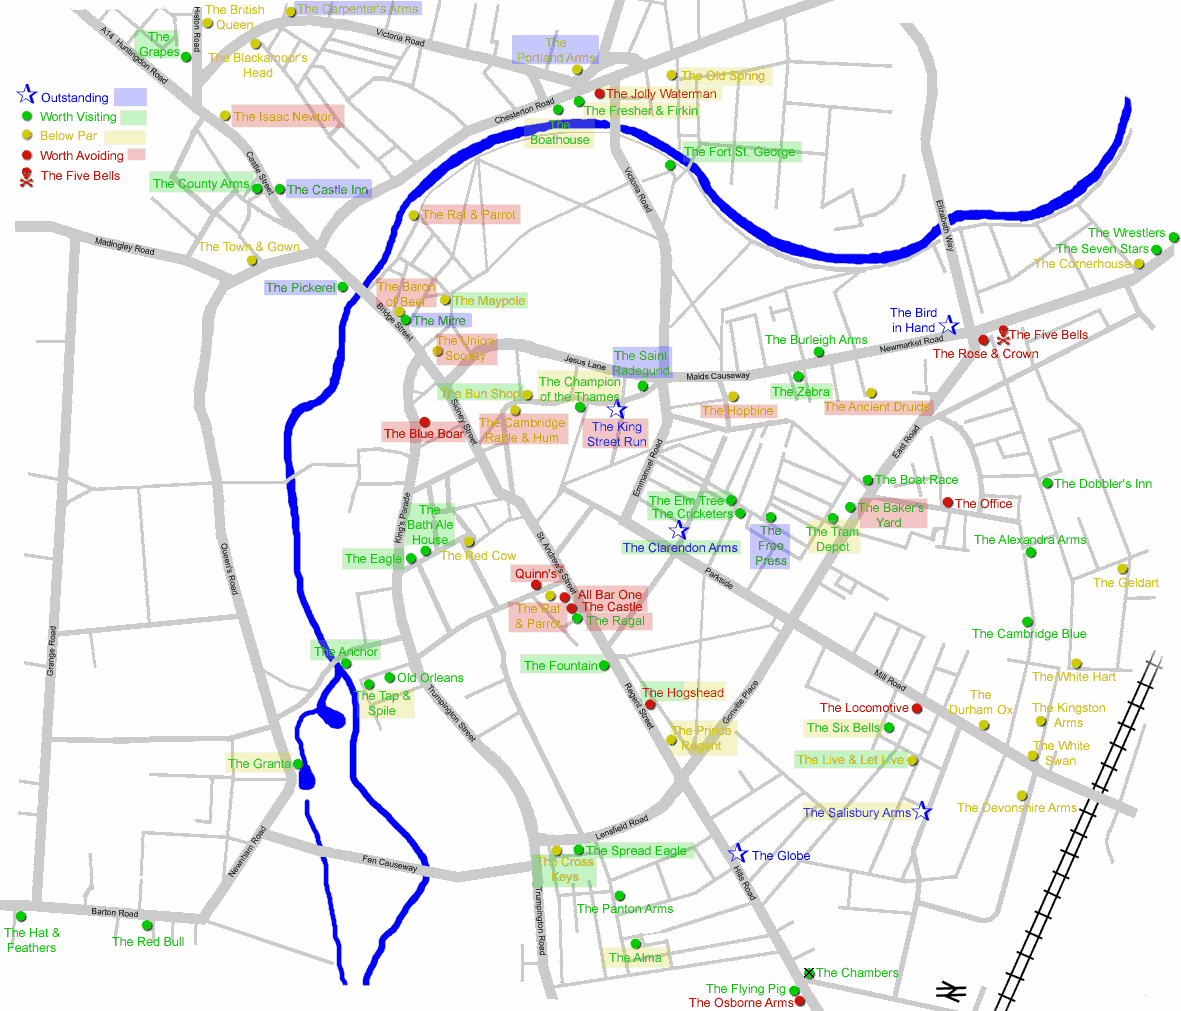 Pub map of Cambridge